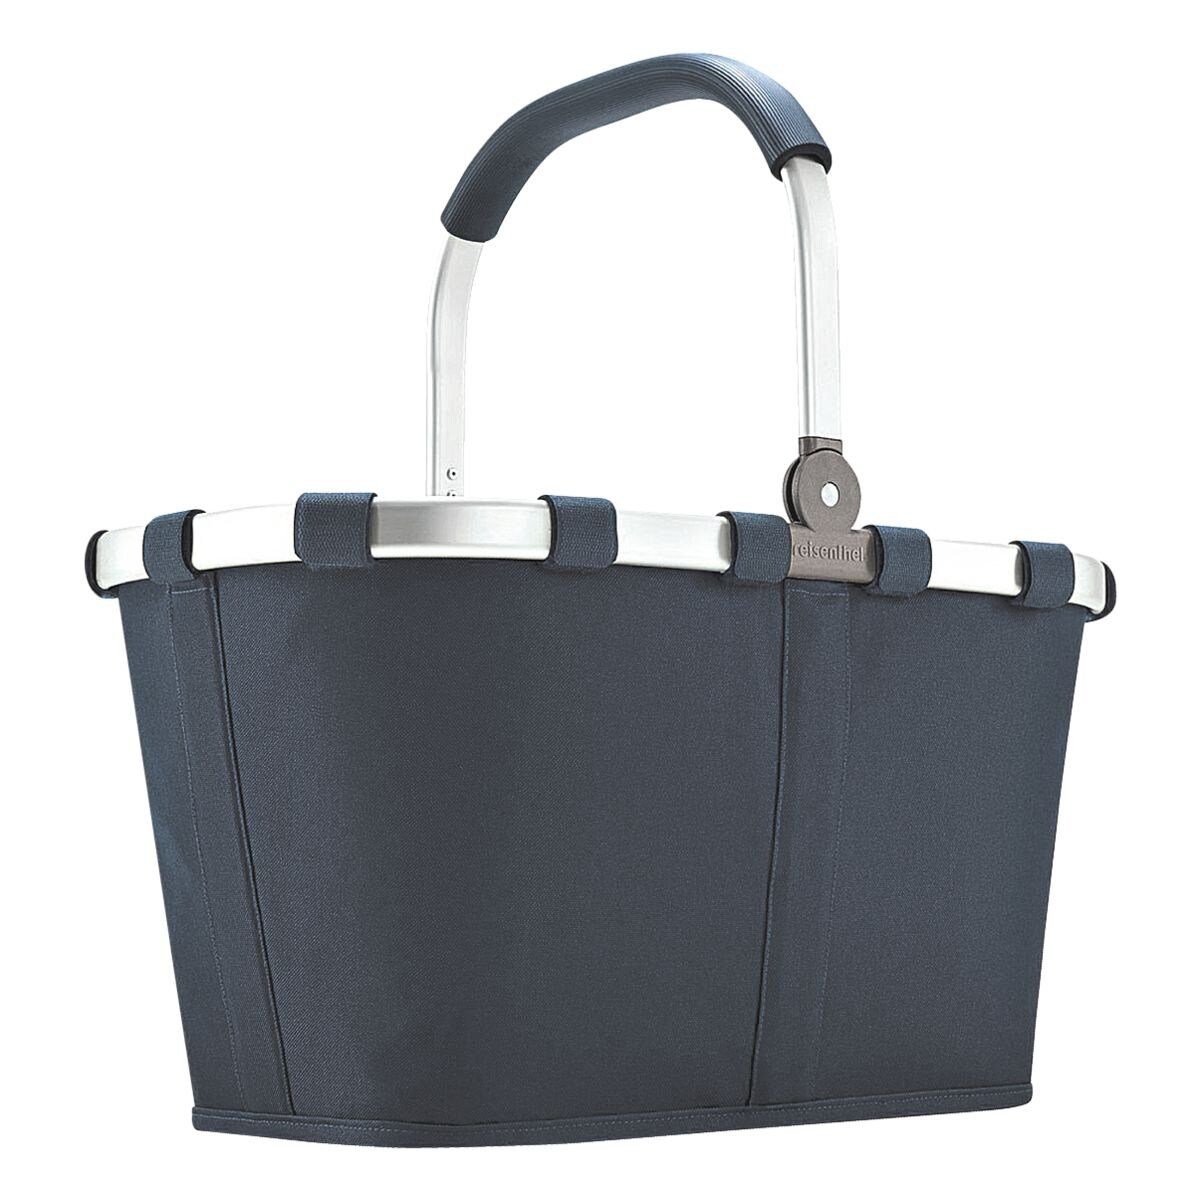 REISENTHEL® Einkaufskorb navy, carrybag Innentasche mit Reißverschluss zusammenklappbar, dunkelblau